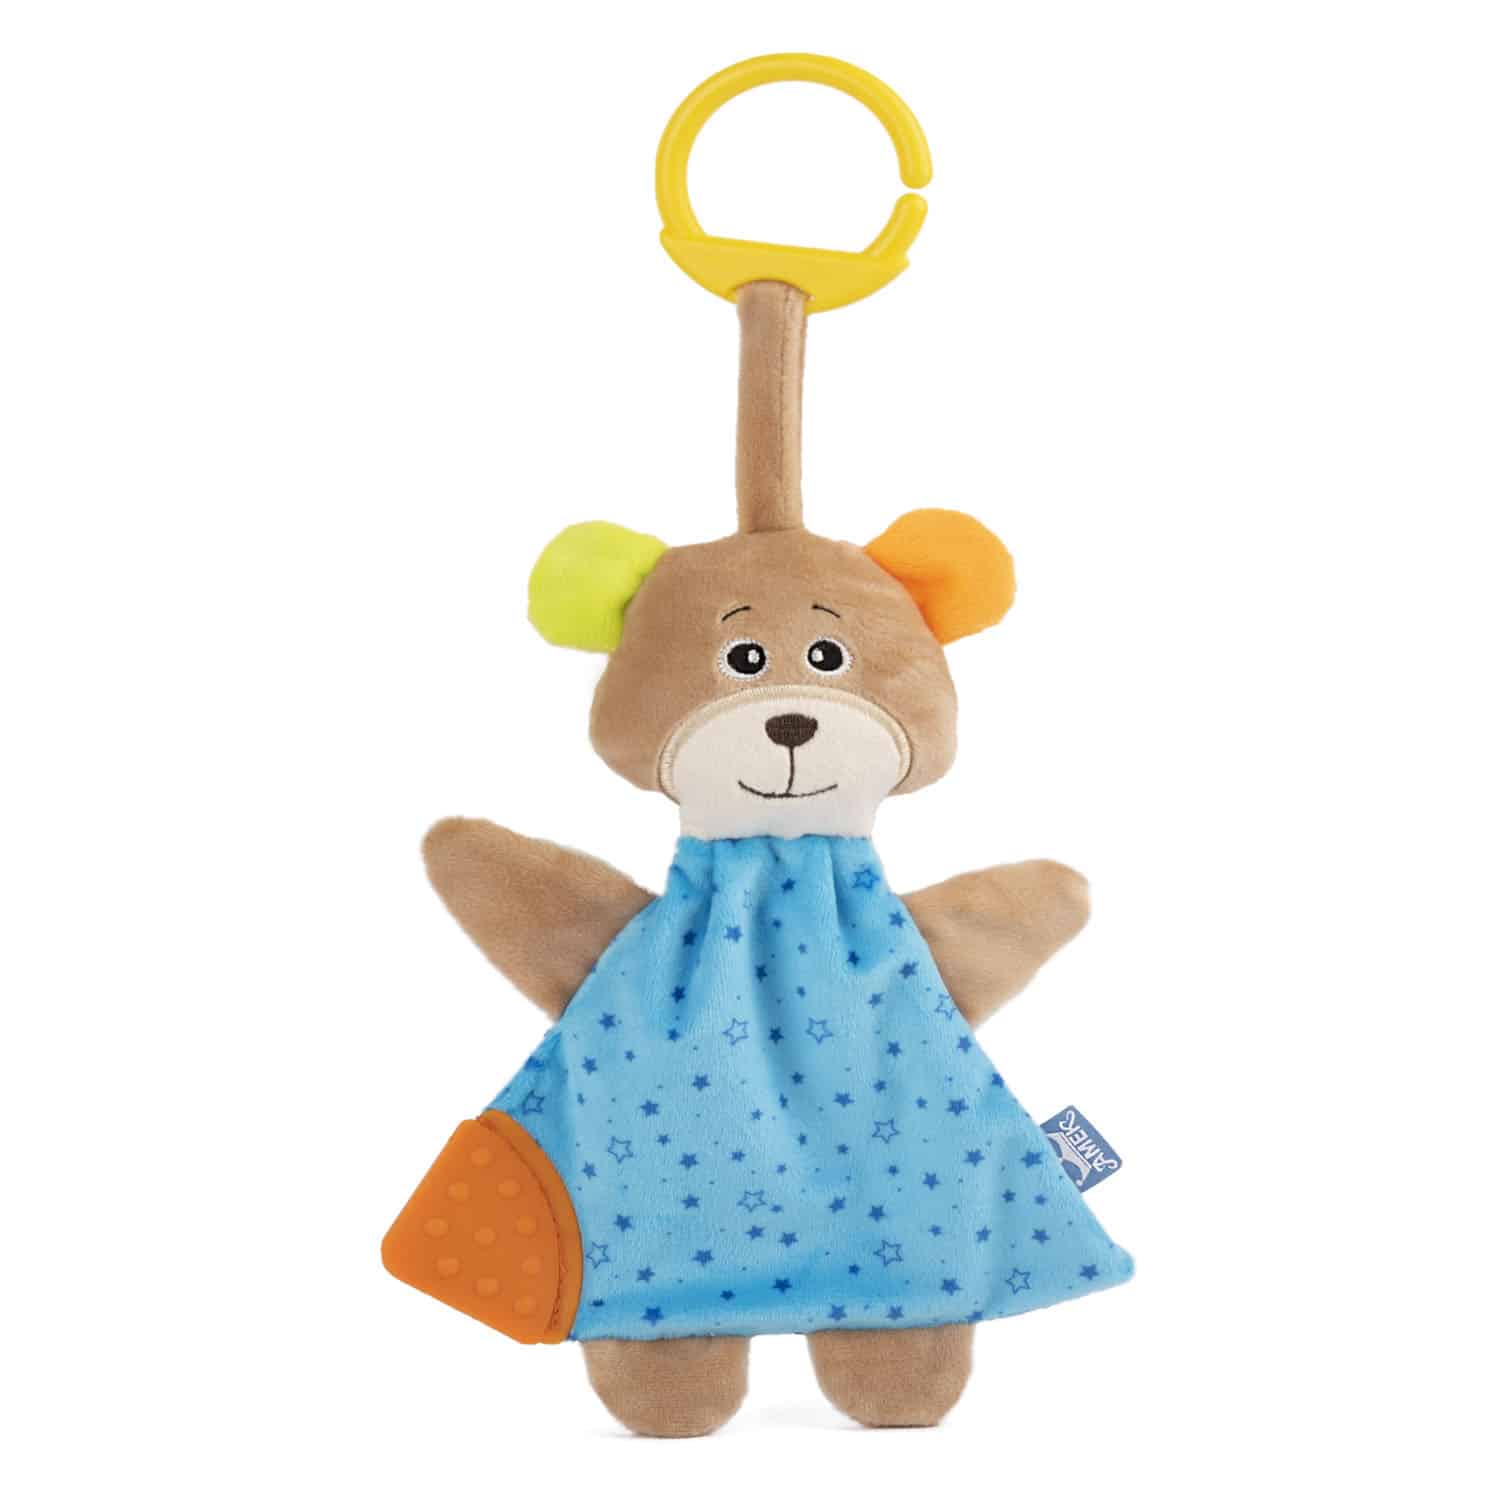 Soft toy for cuddling - Bear